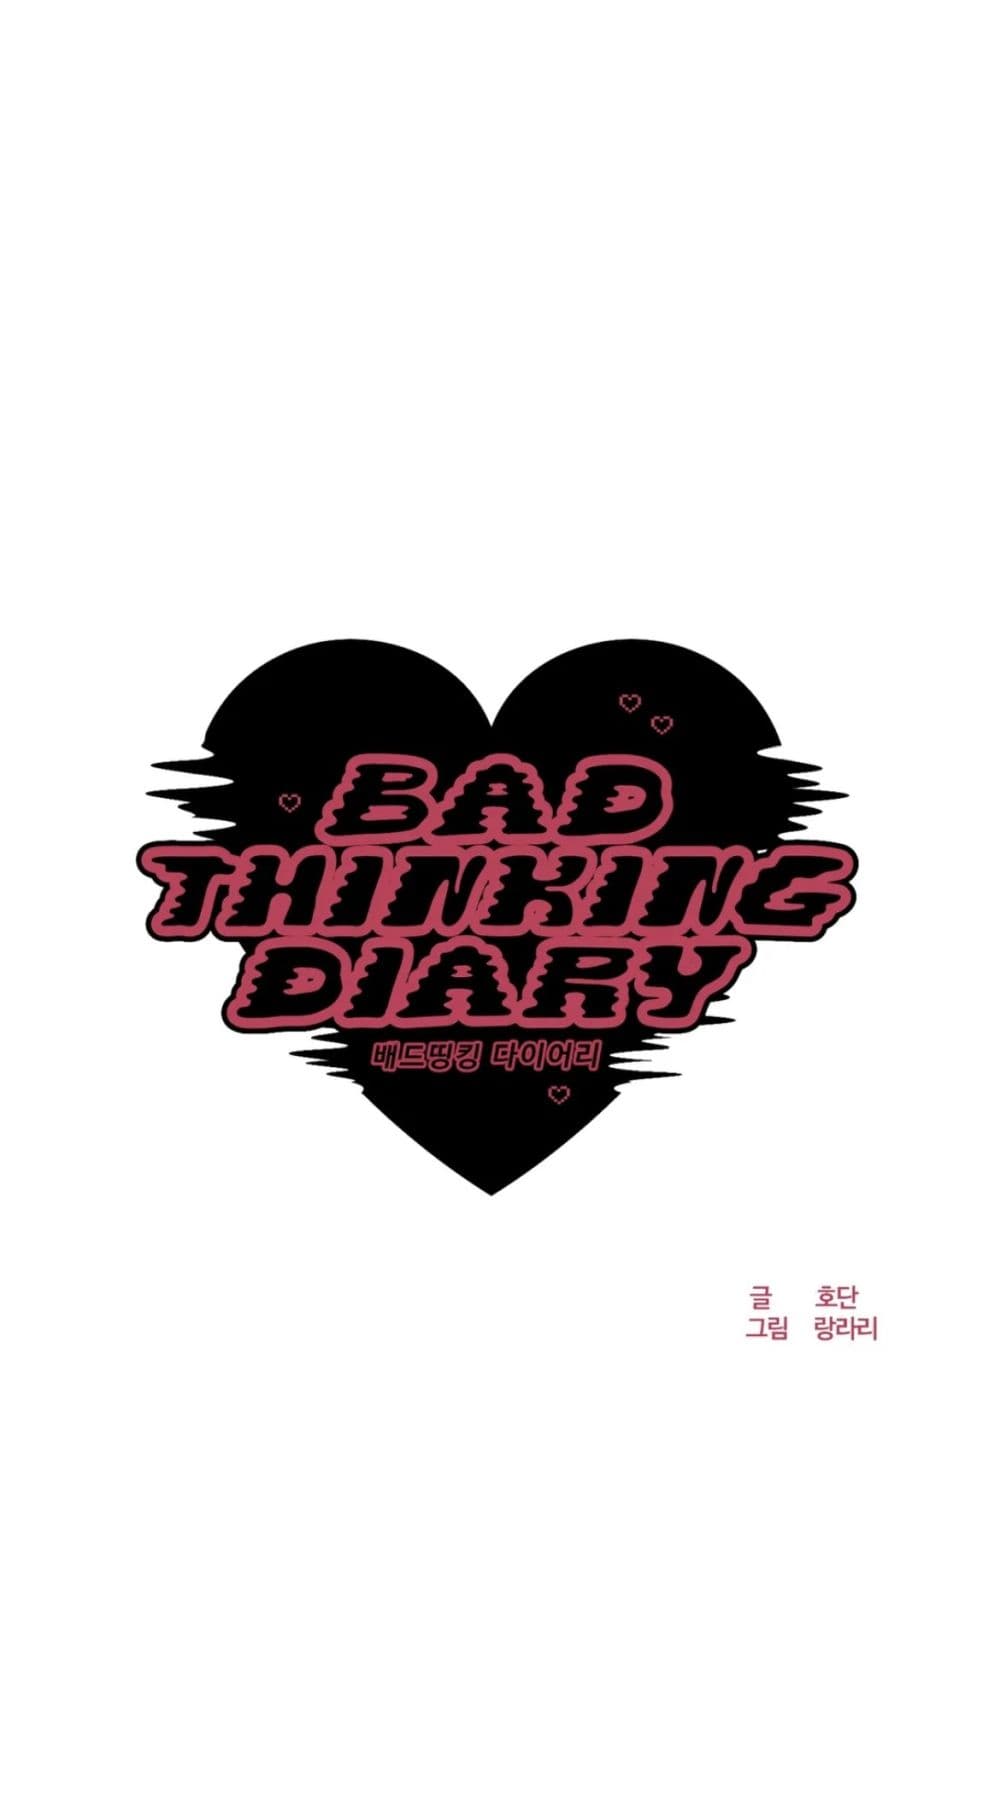 Bad Thinking Dairy 9 07